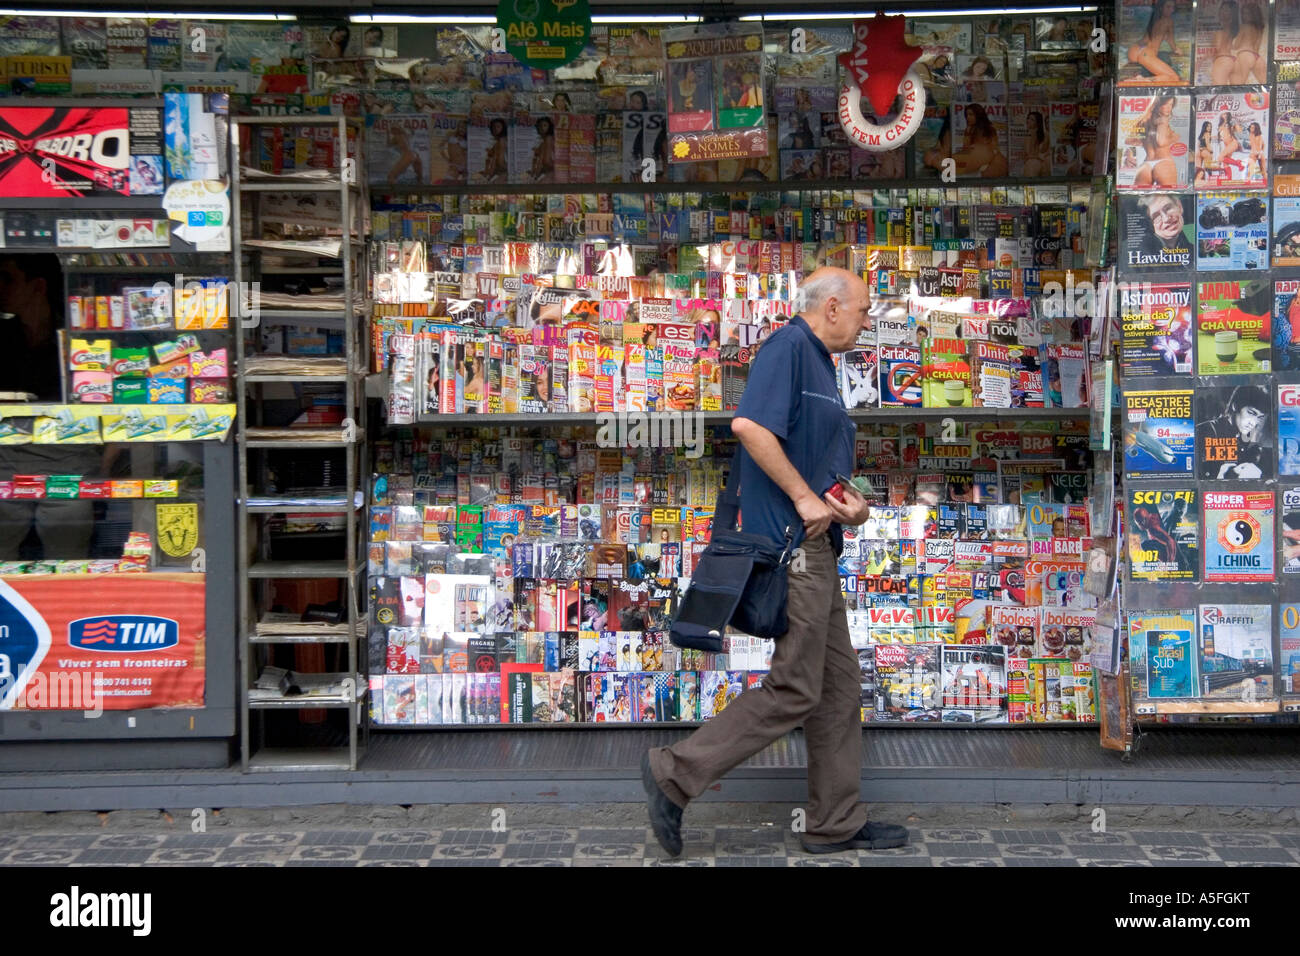 Un homme passe devant un kiosque à journaux dans la section asiatique Liberdade de Sao Paulo Brésil Banque D'Images